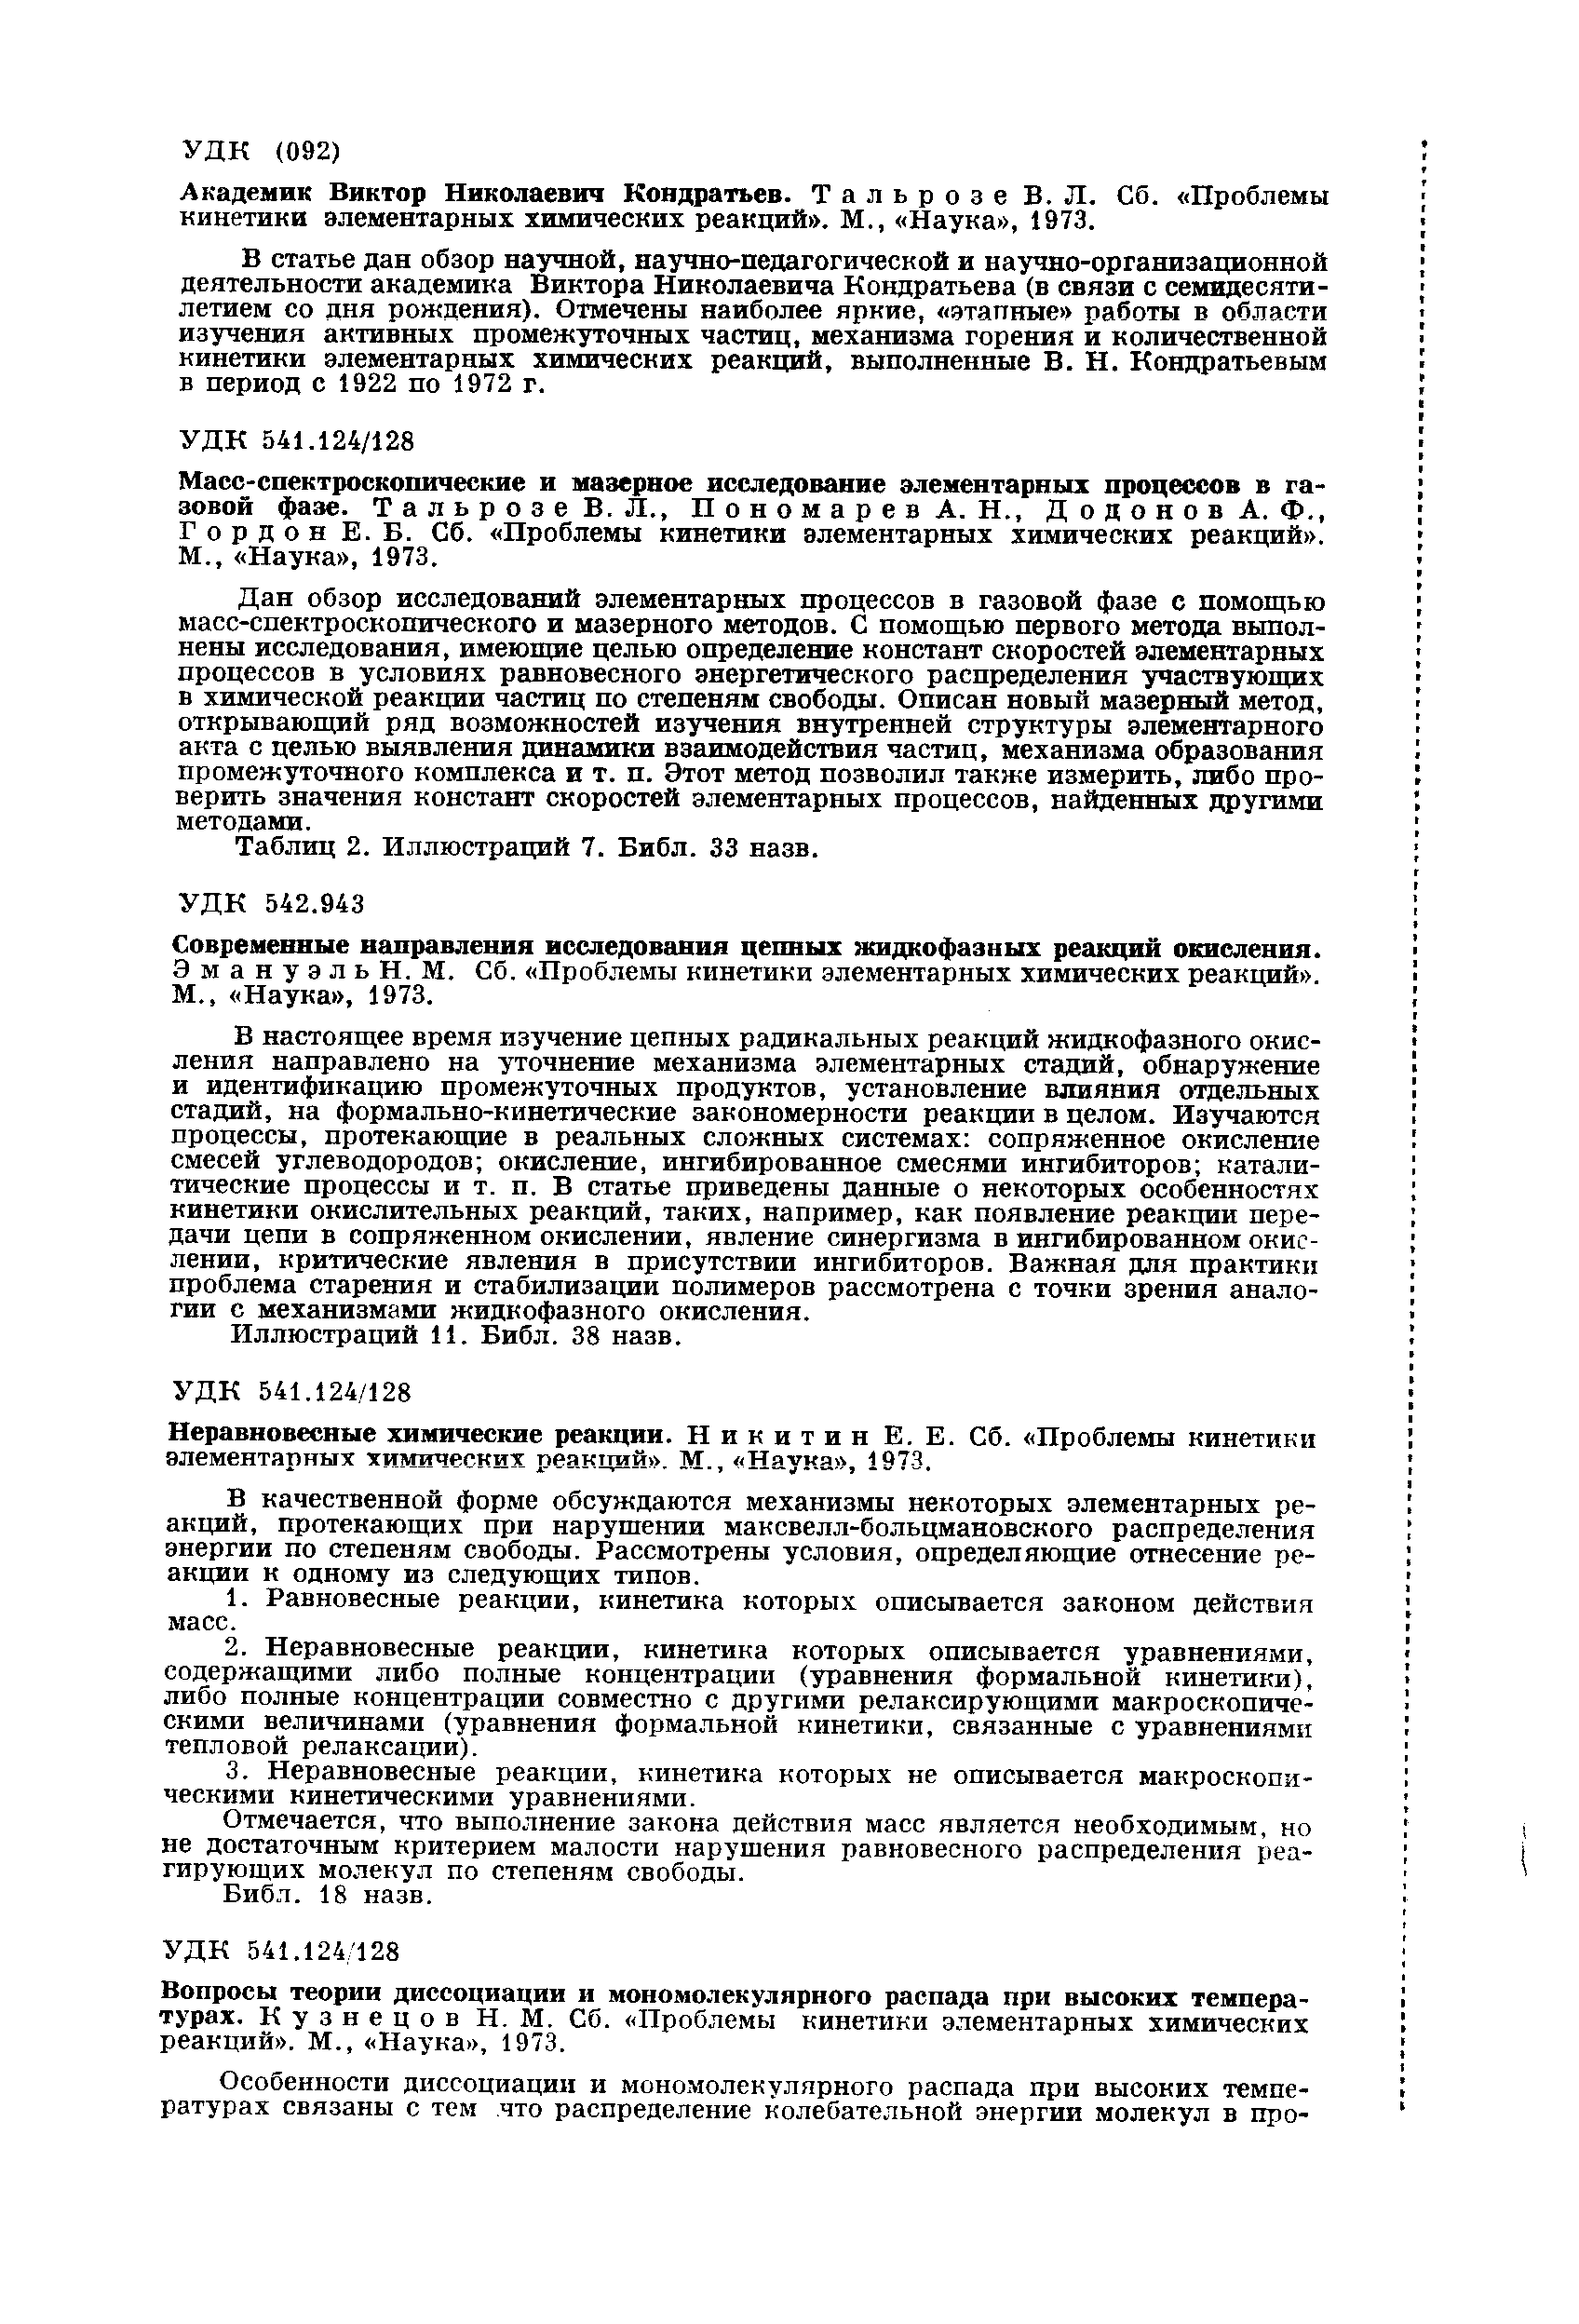 Неравновесные химические реакции. Никитин Е. Е. Сб. Проблемы кинетики элементарных химических реакций . М., Наука , 1973.